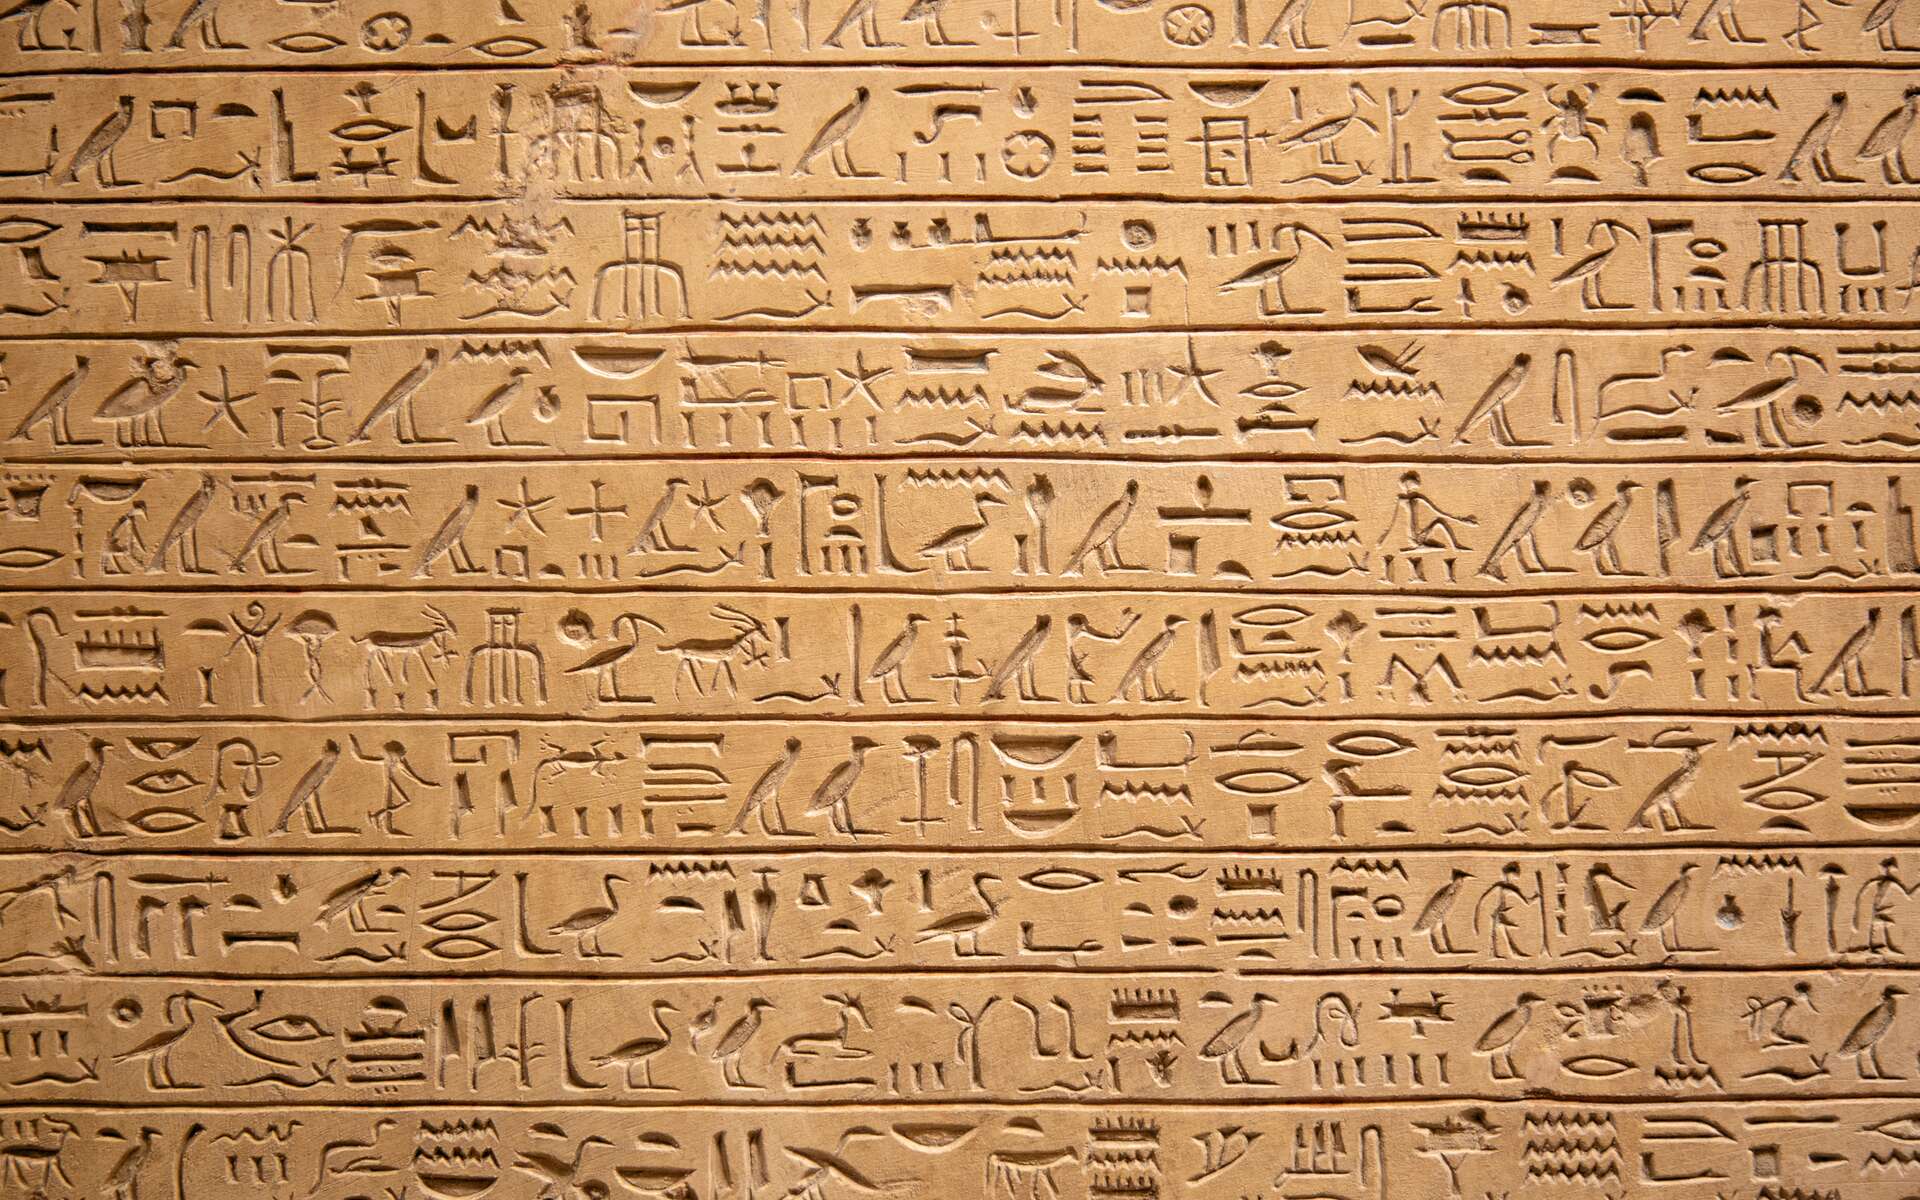 L'étrange cas des mains coupées et enterrées en Égypte ancienne